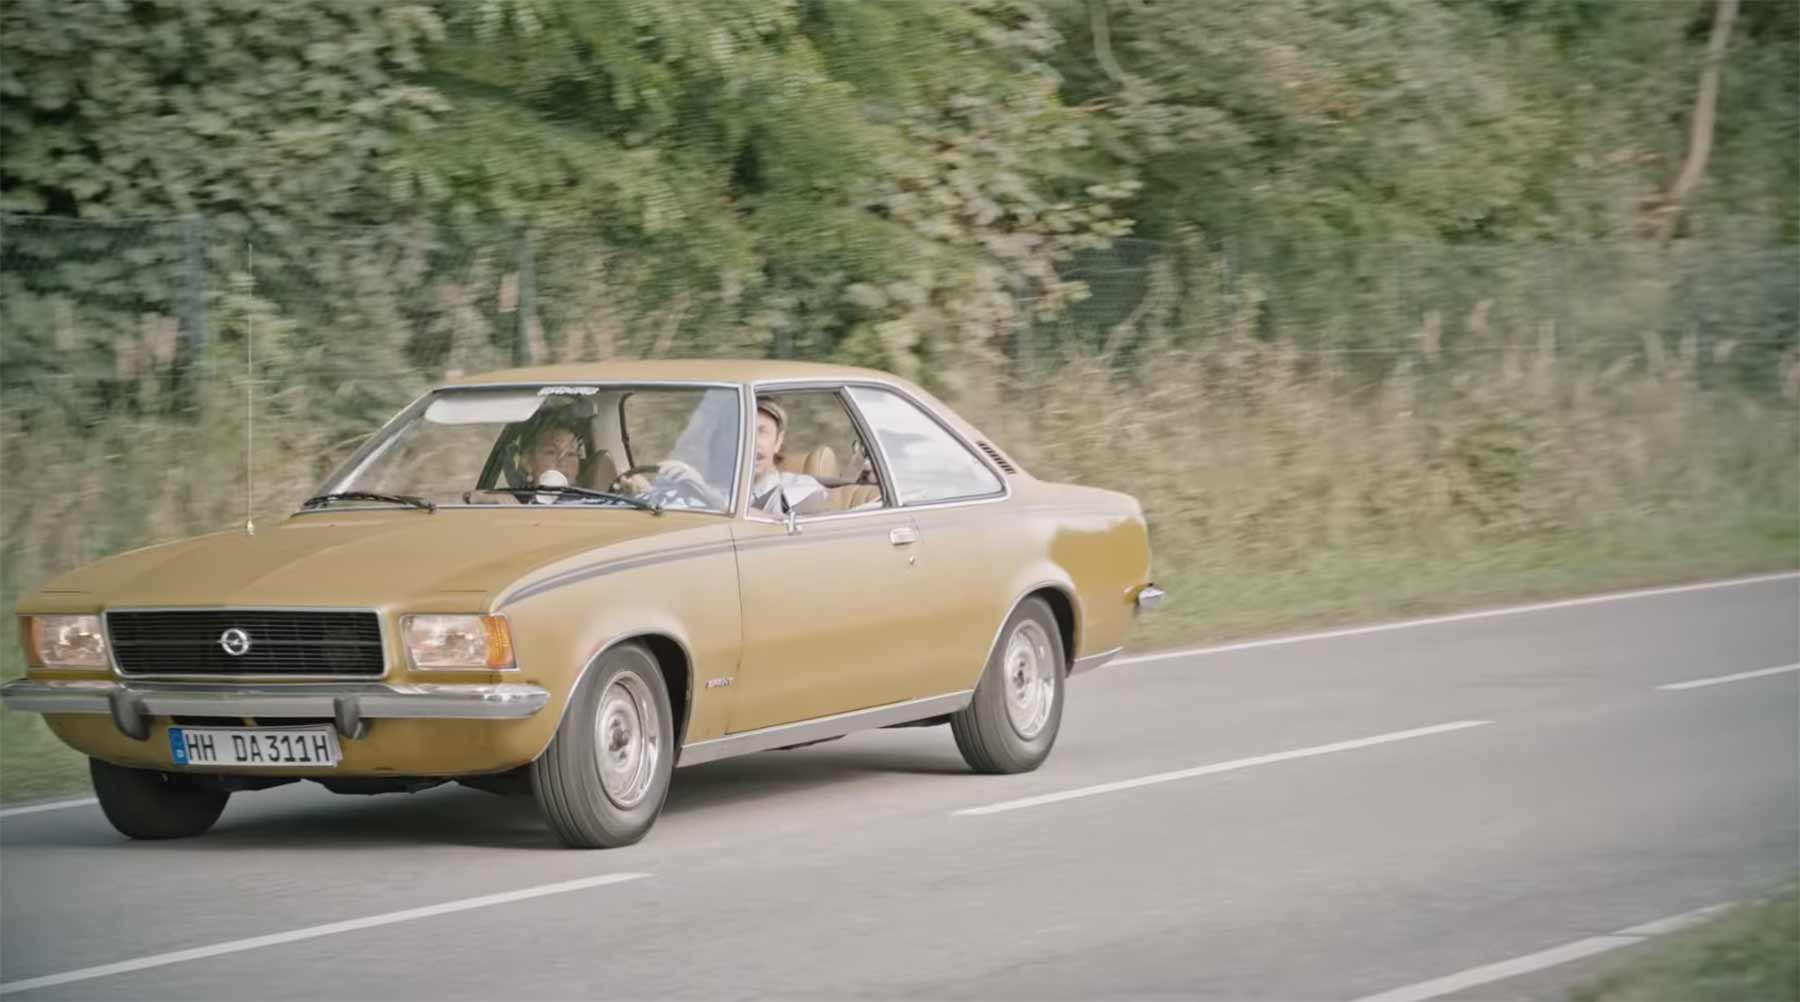 Verkehrserziehung mit Cäptn Clepto und einem 70er Opel Rekord Verkehrserziehung_Mit-allen-Sinnen_DA-Direkt_02 